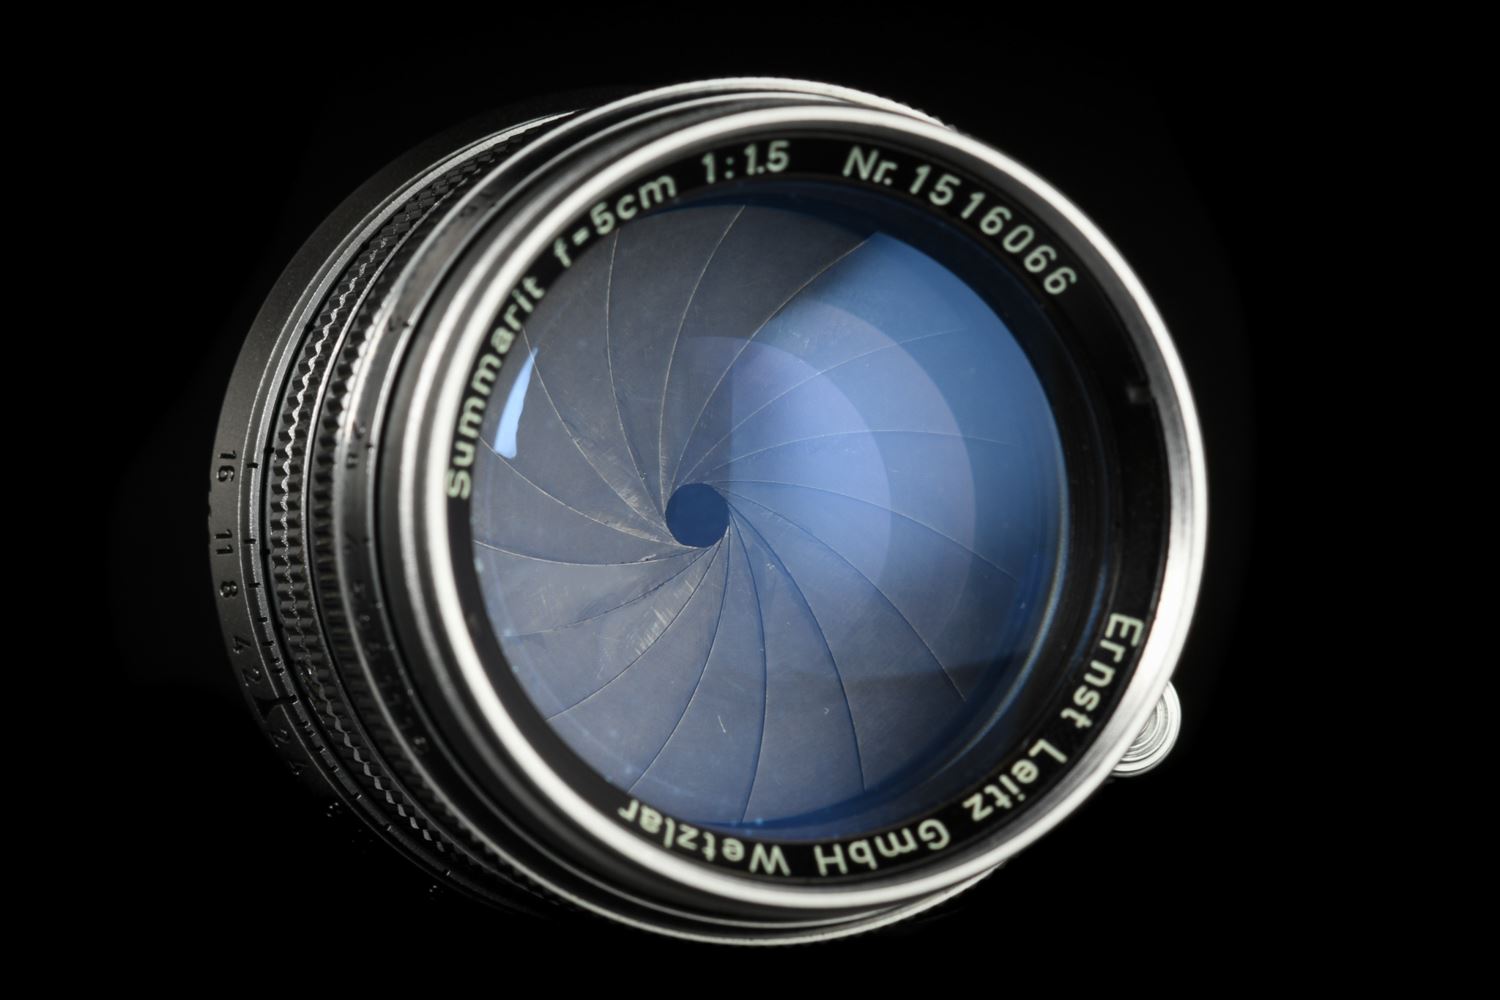 Picture of Leica Summarit-M 50mm f/1.5